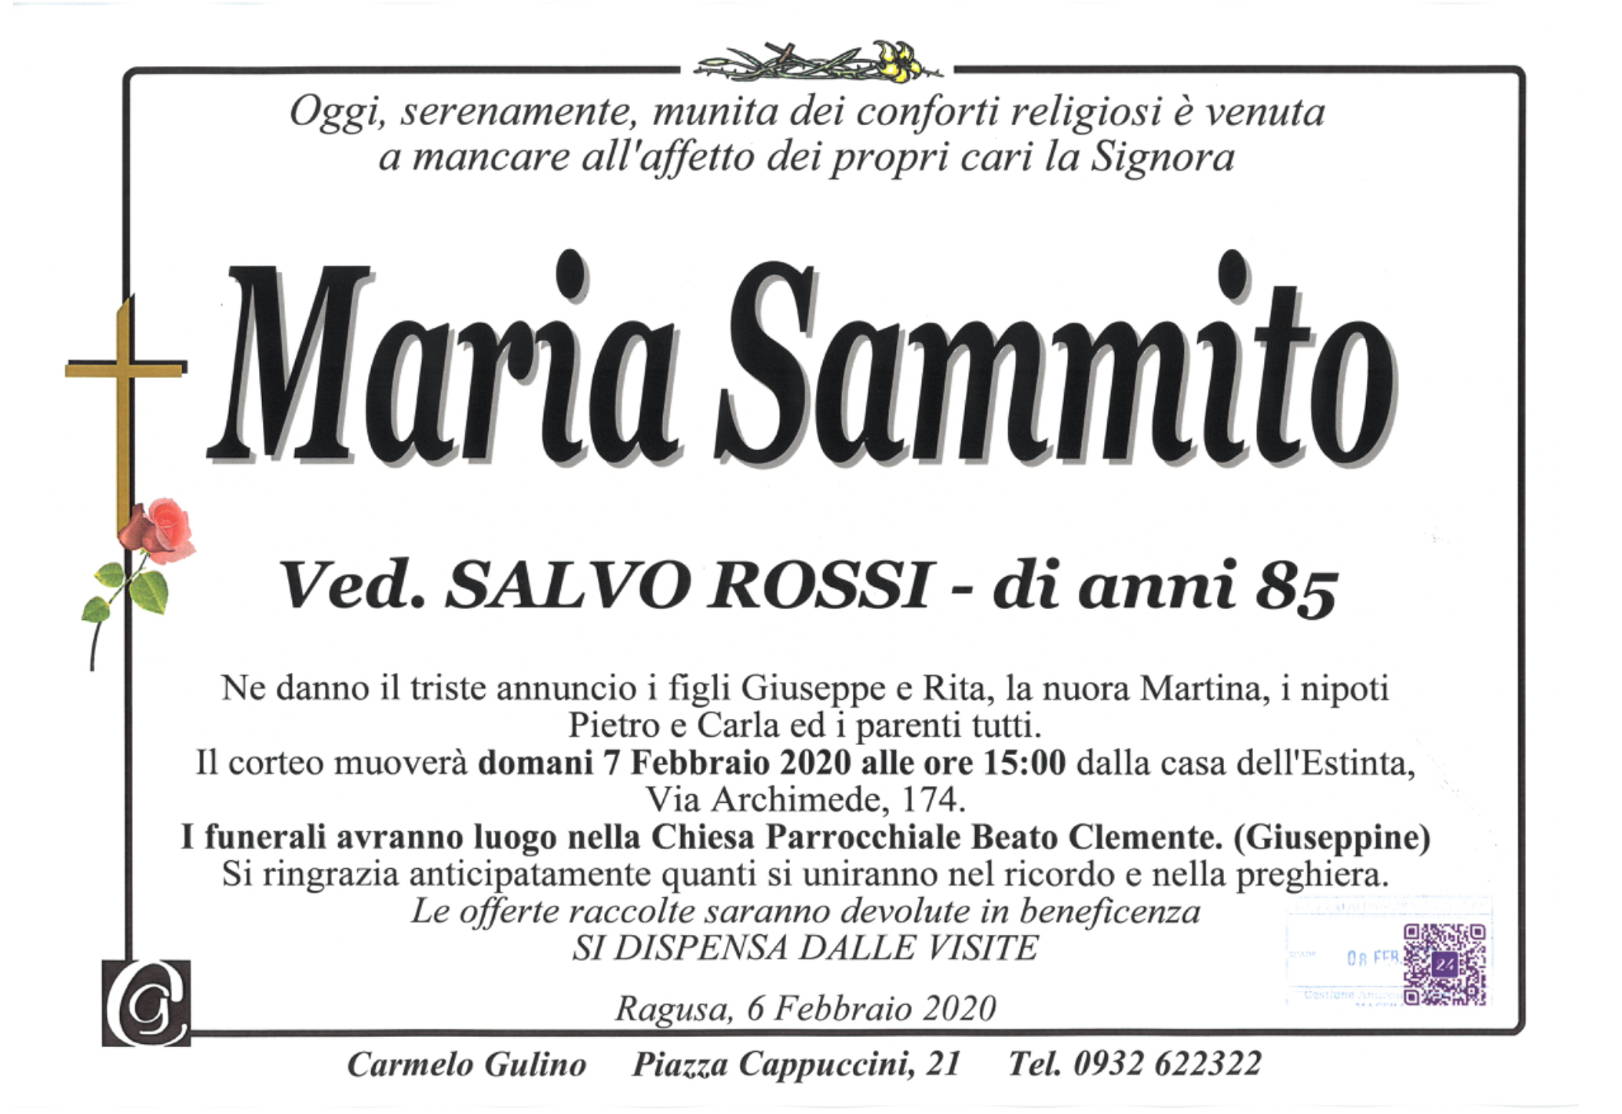 Maria Sammito